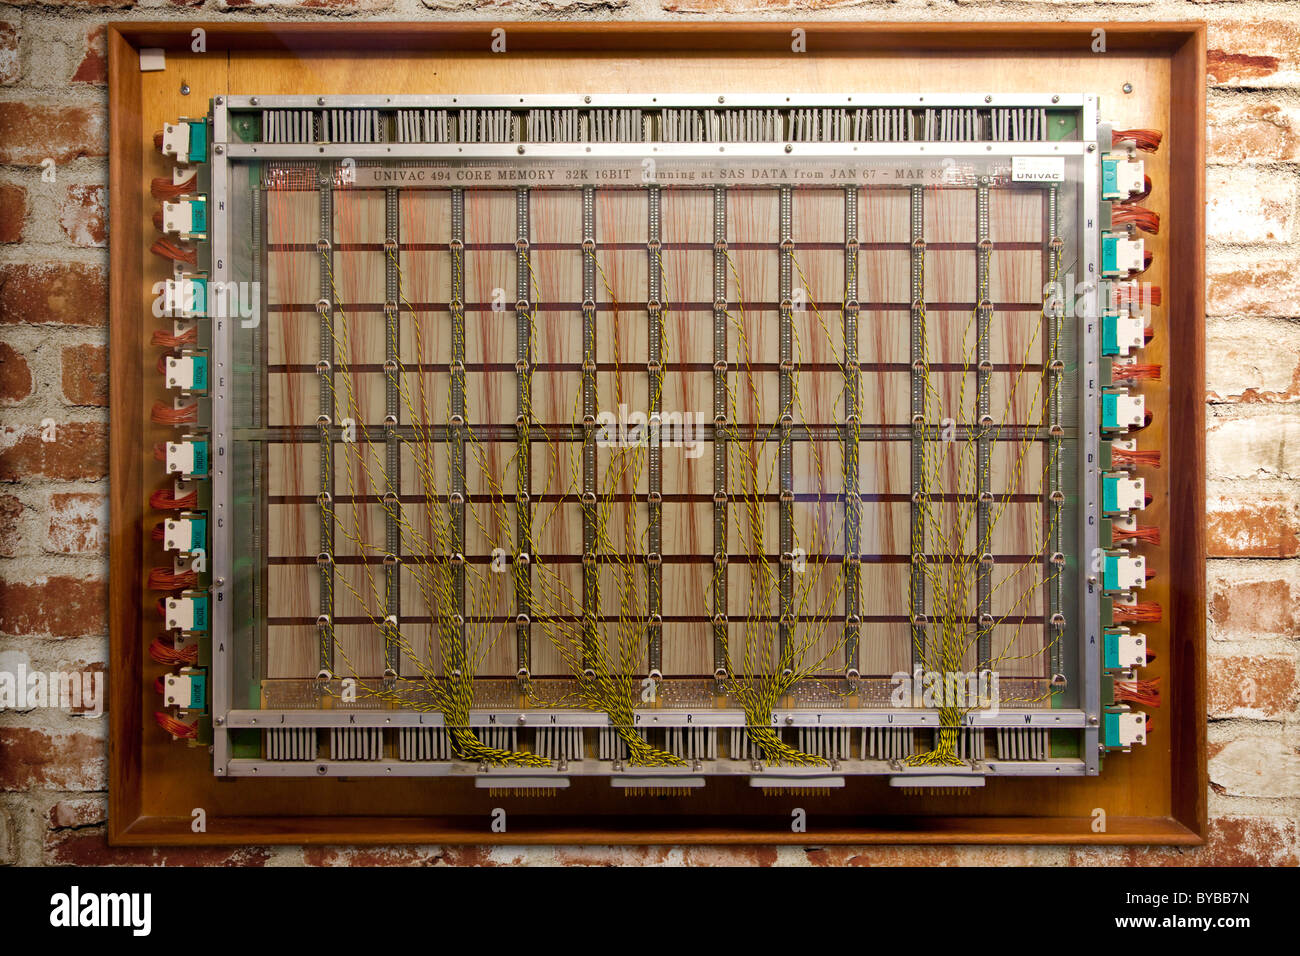 Modulo di 32 kilobyte 16 bit Univac core memoria da 1967 Foto Stock